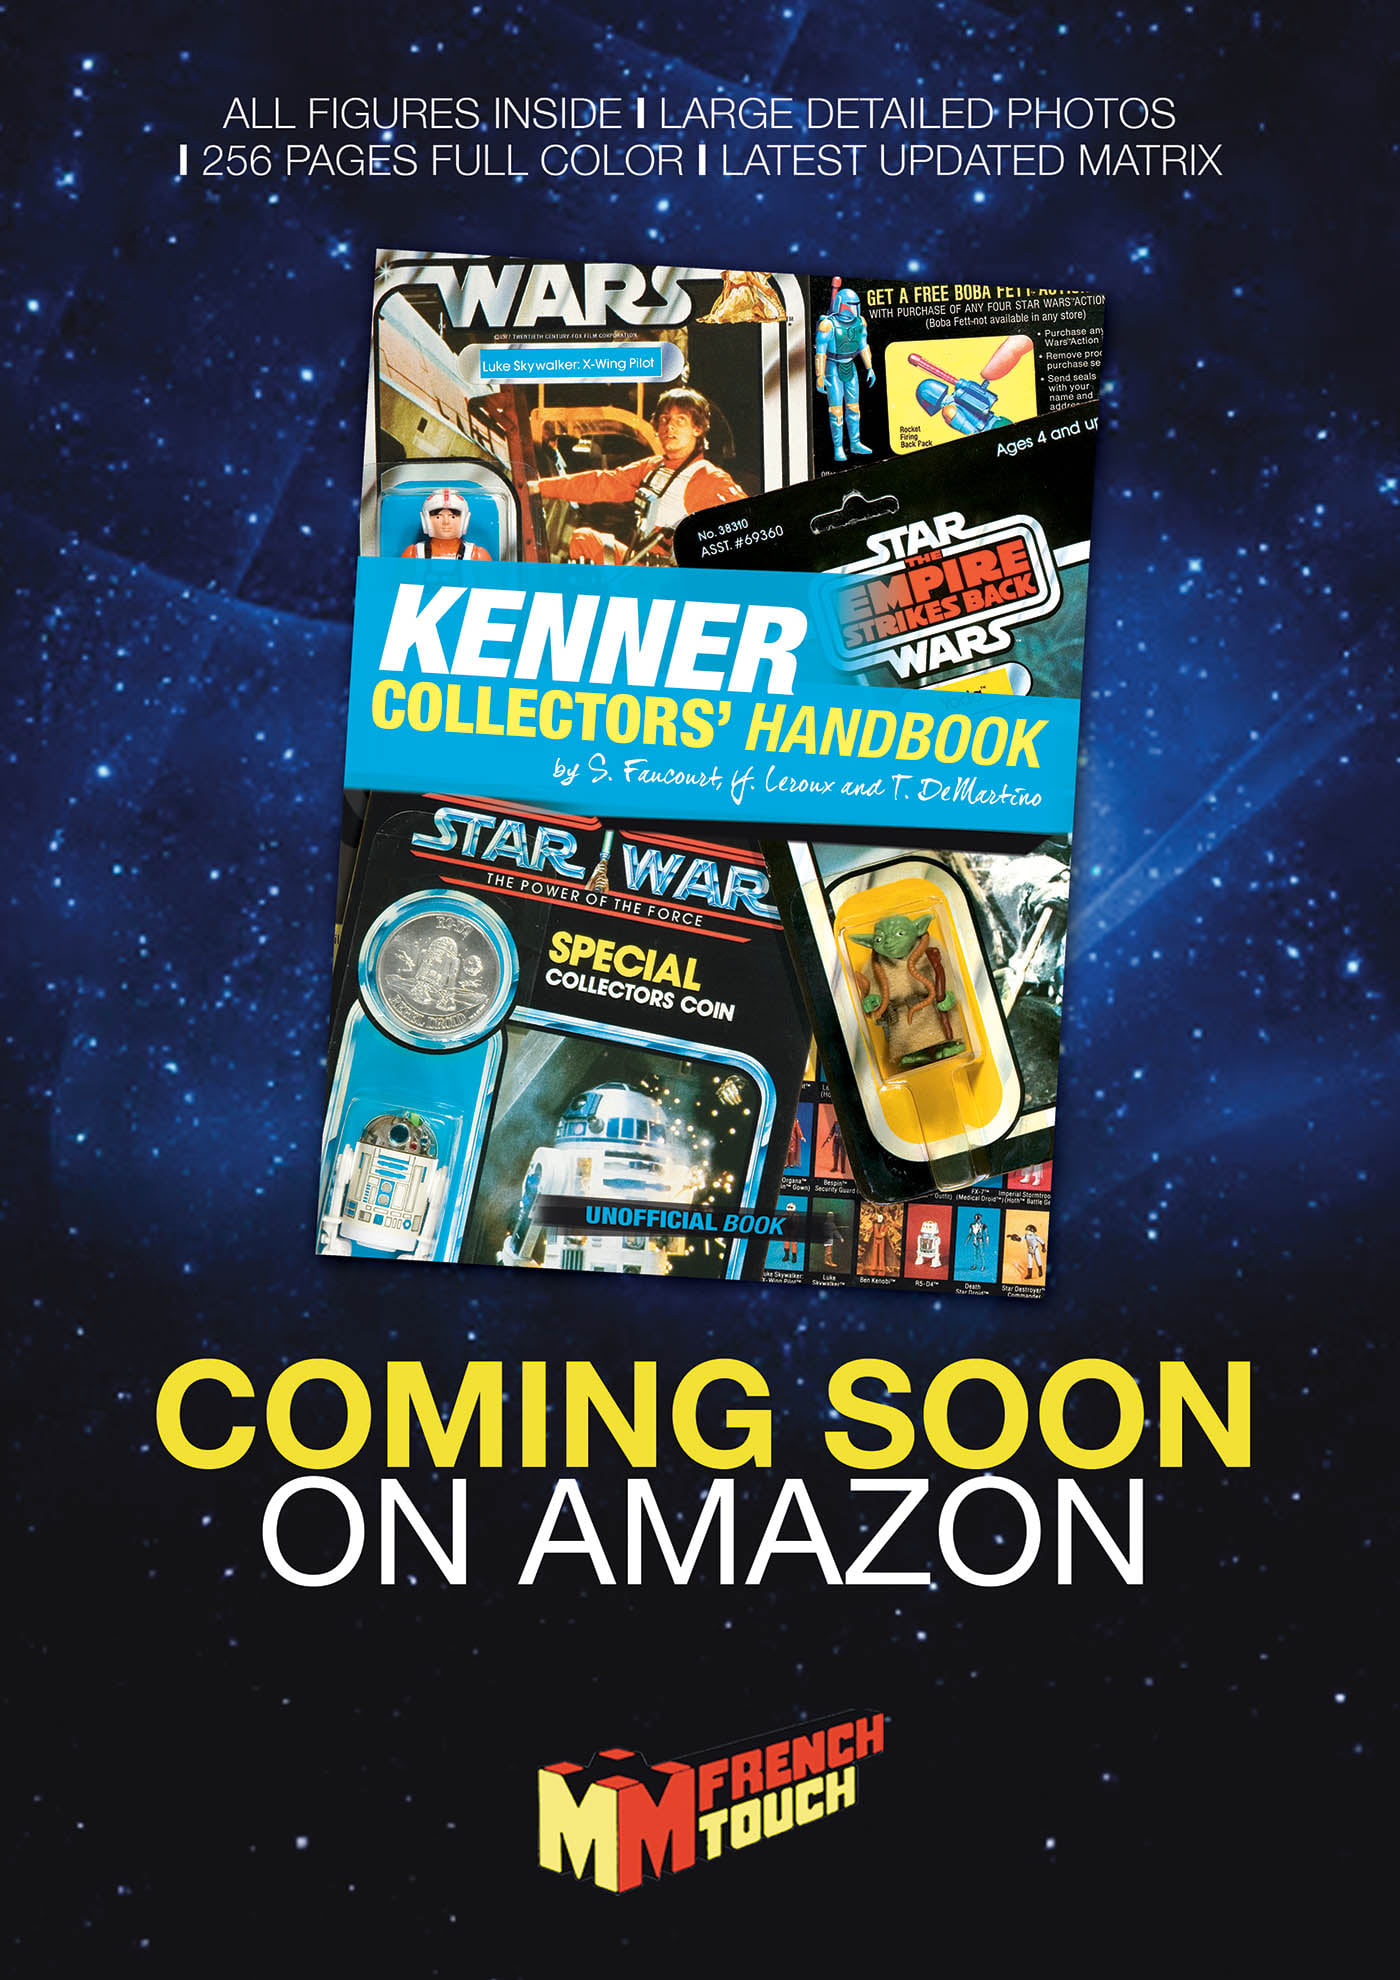 Star Wars Kenner book